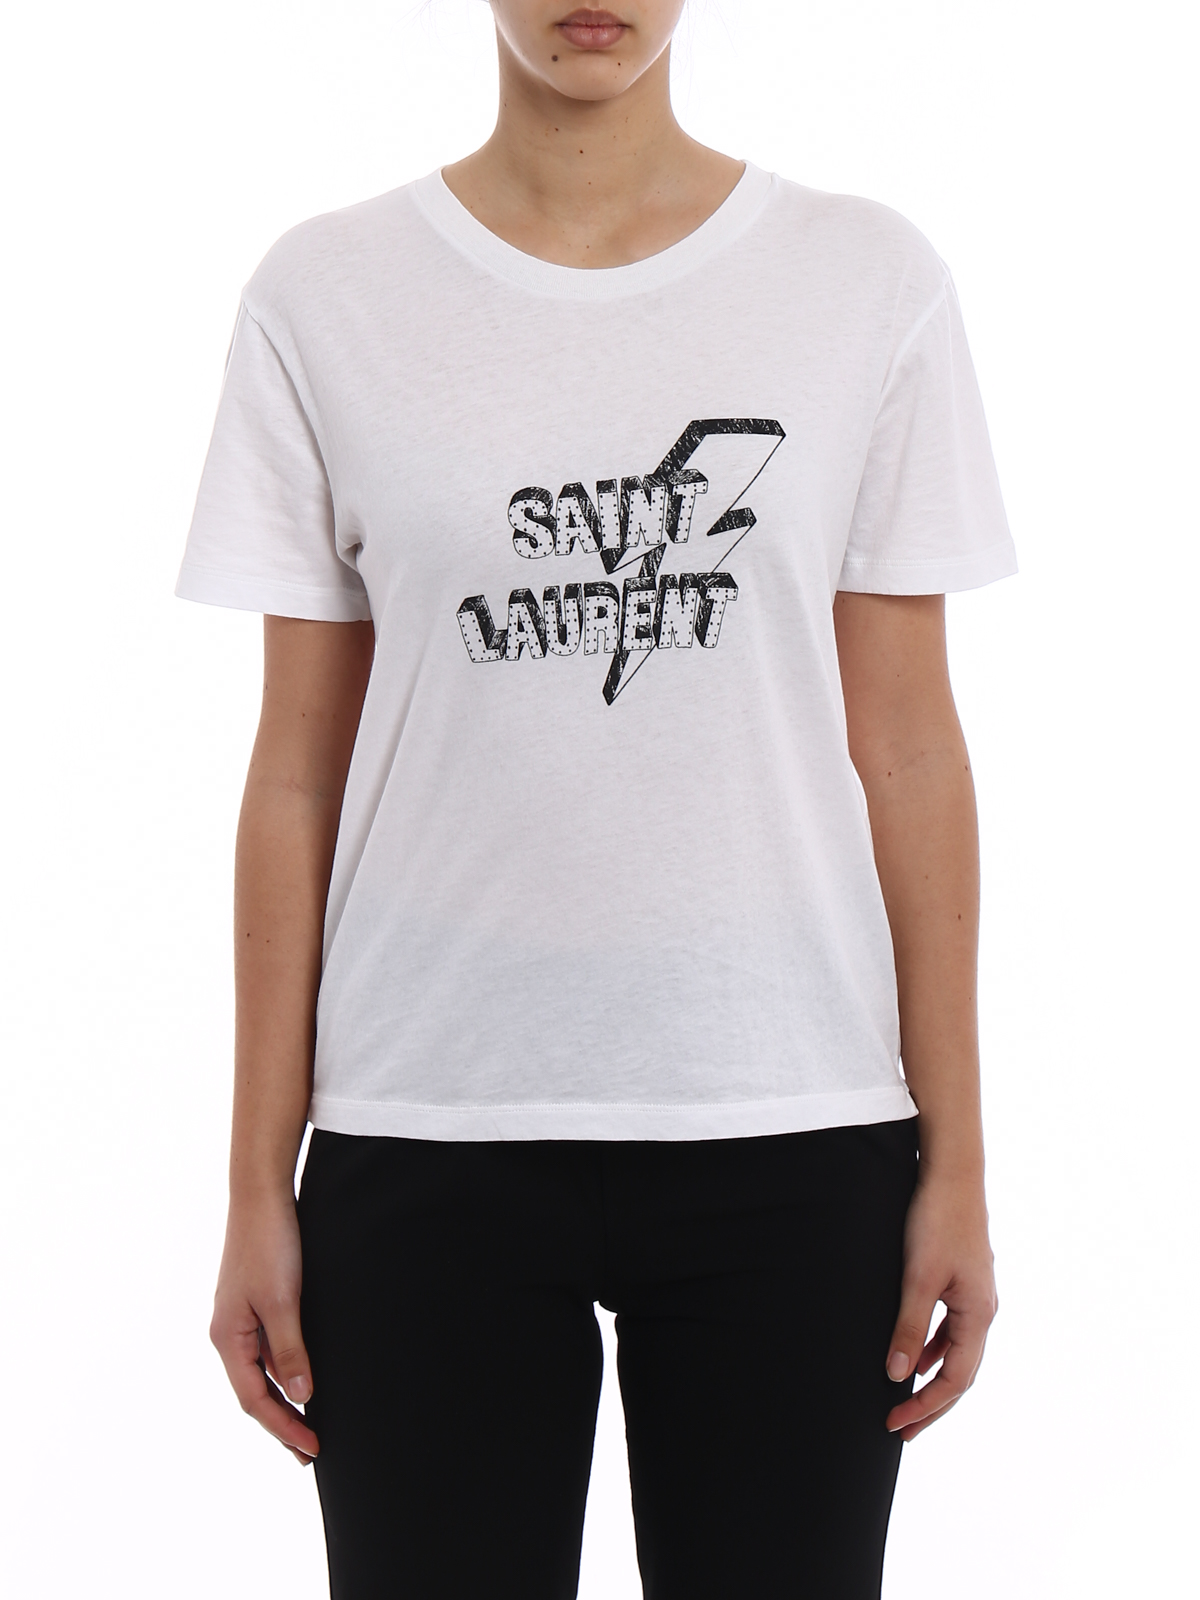 Saint Laurent Shirt White Shop, 58% OFF | www.nogracias.org